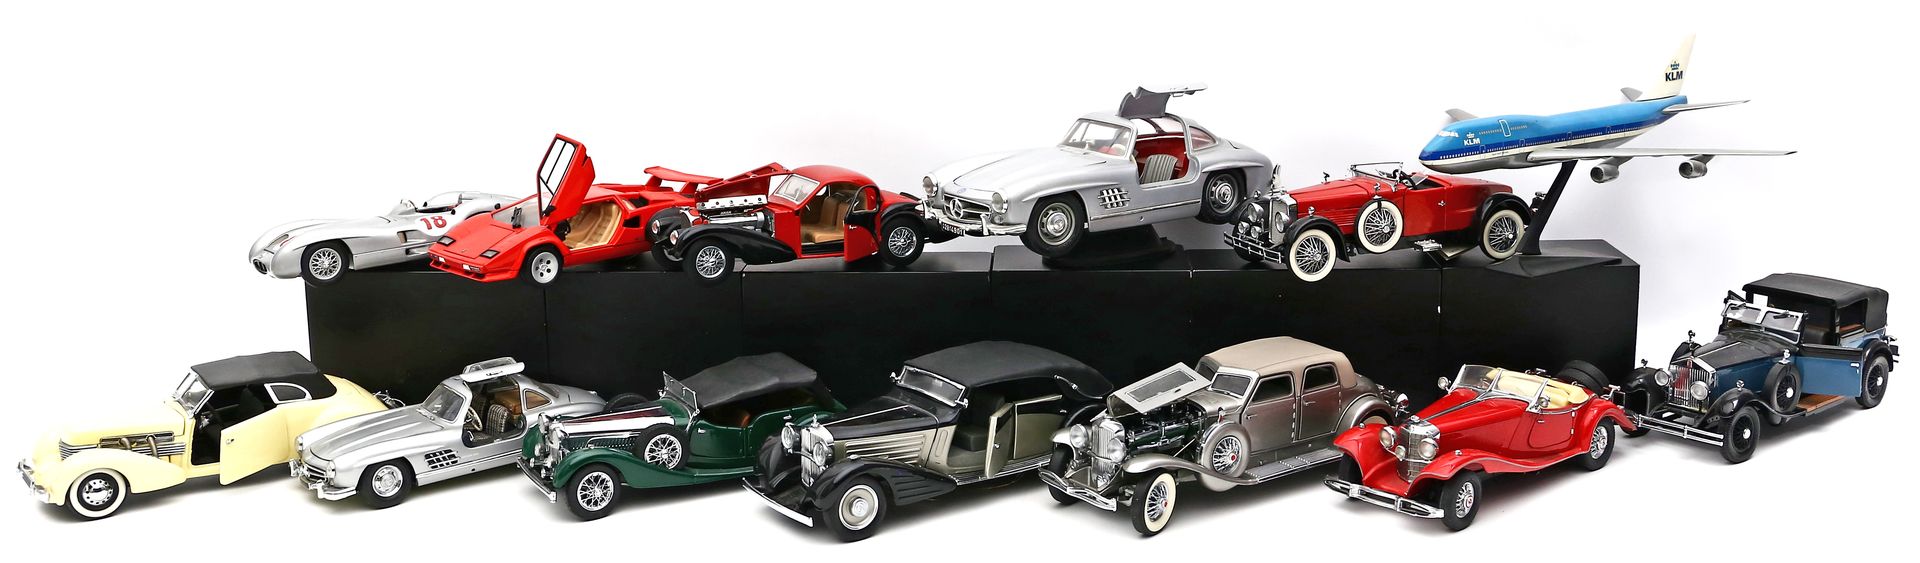 Sammlung von 22 verschiedenen Modellautos.